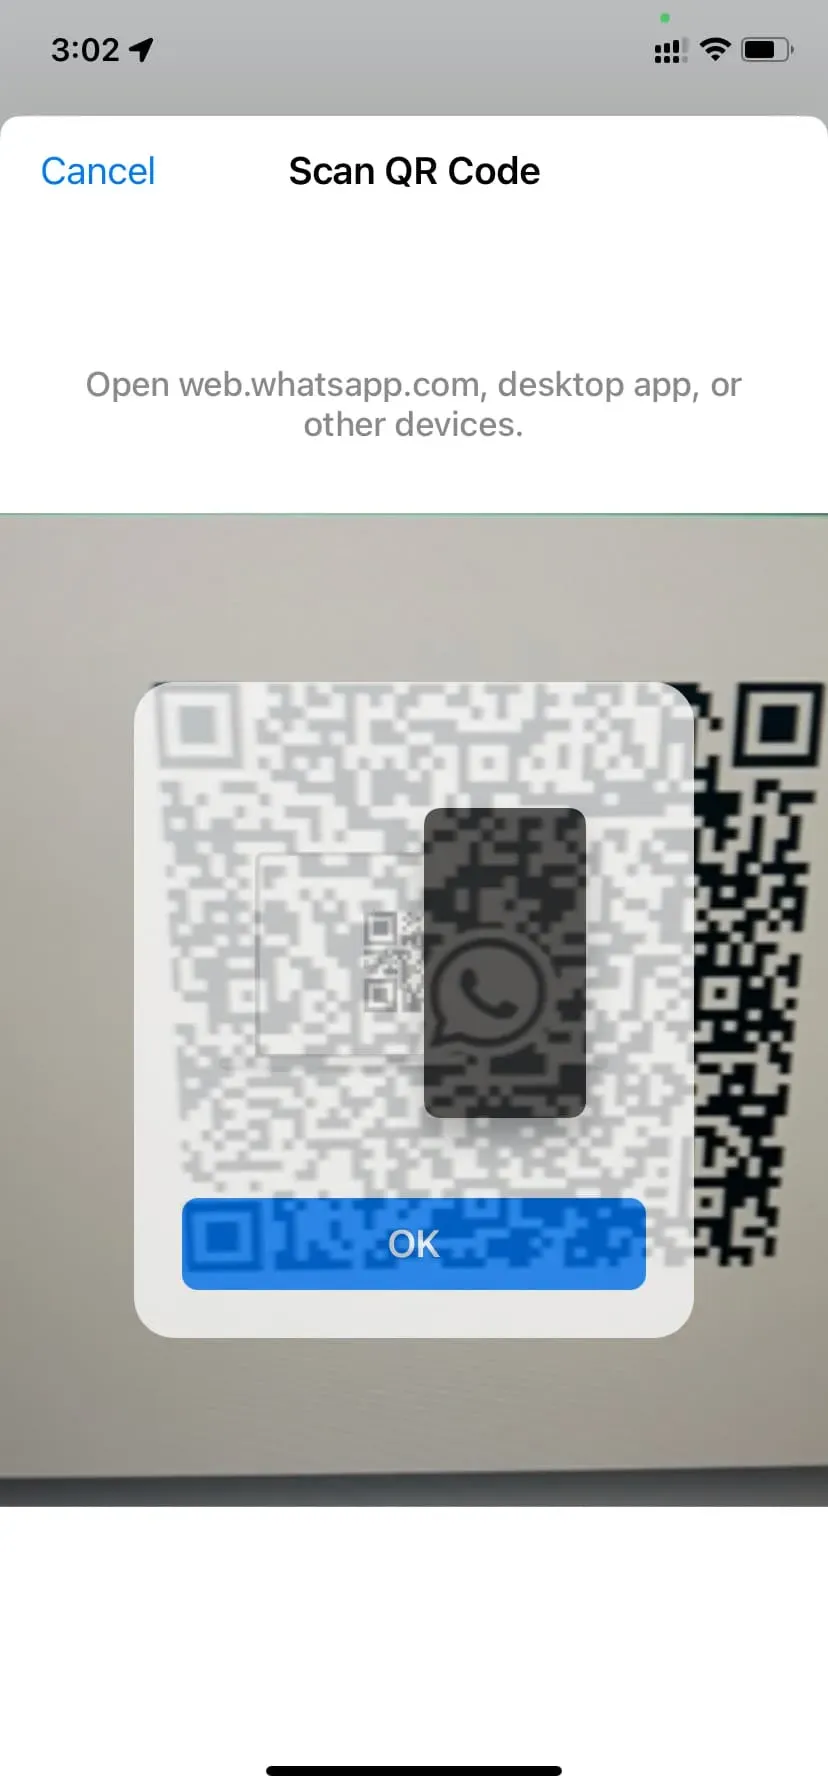 Сканируйте QR-код WhatsApp Web с помощью WhatsApp на iPhone